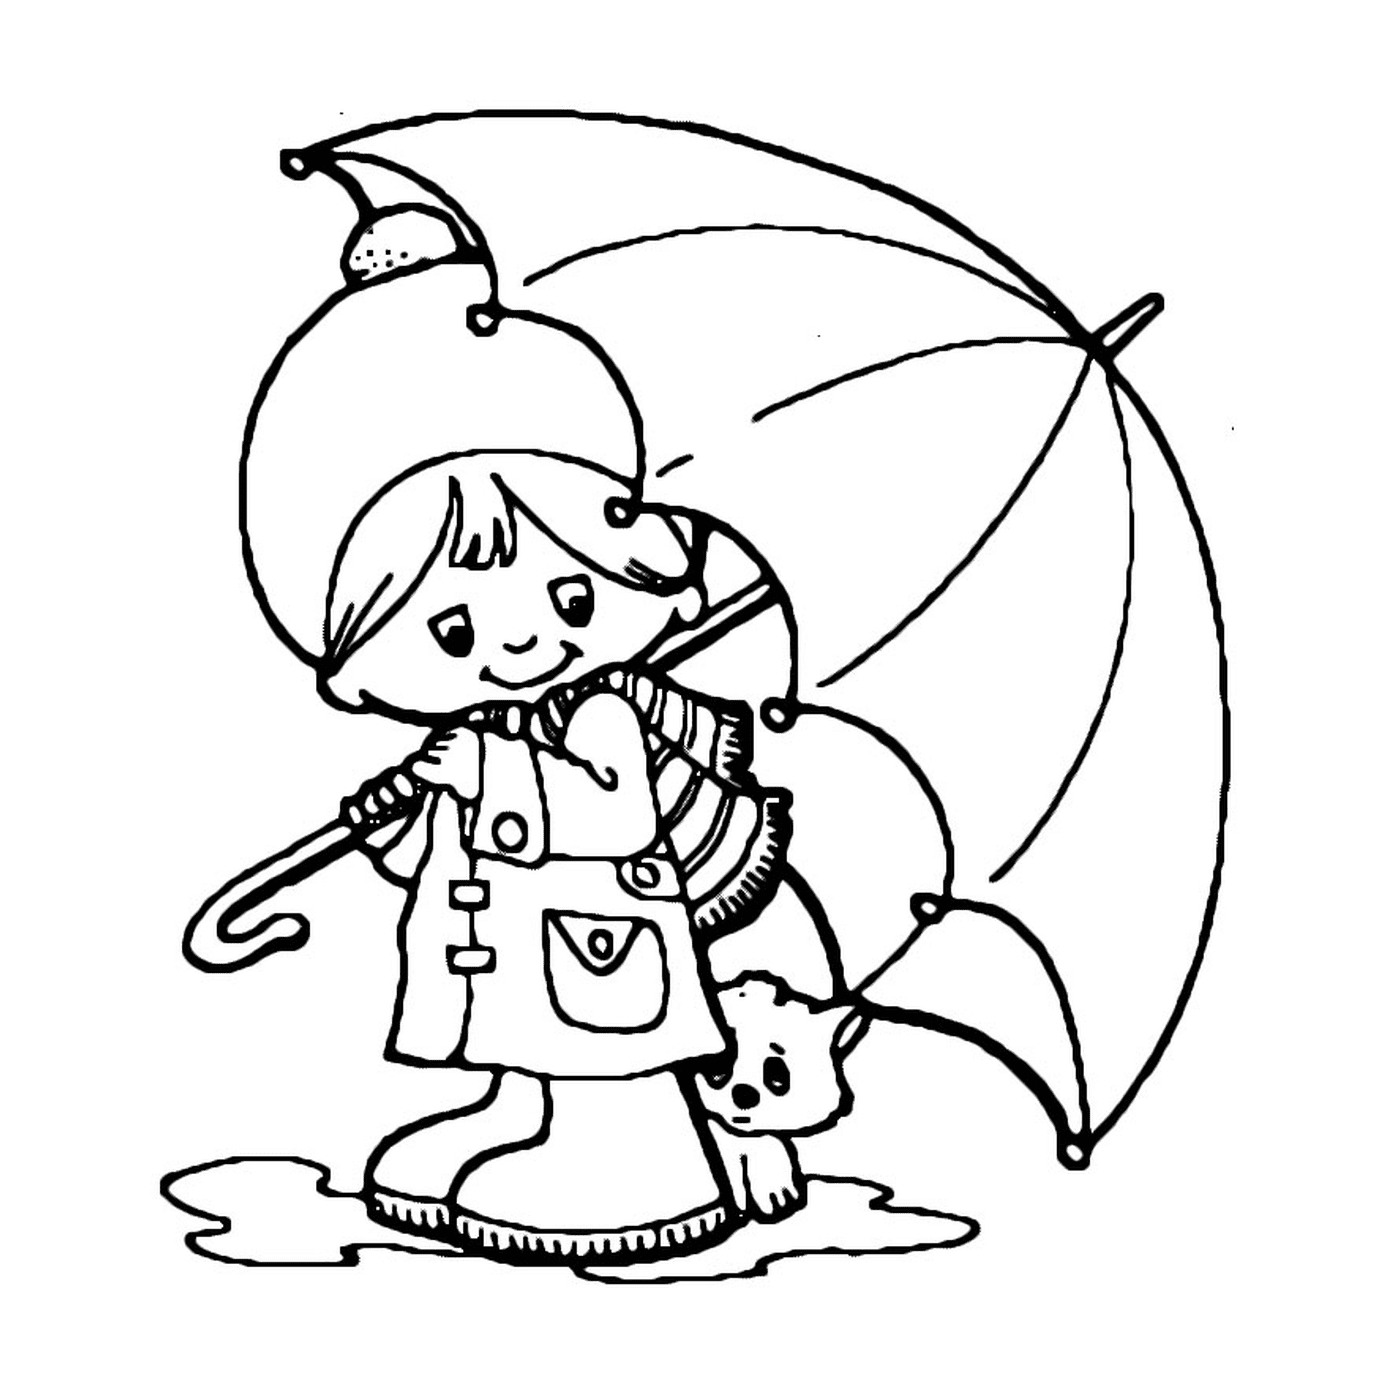  Ein kleiner Junge und sein Hund unter einem Regenschirm 